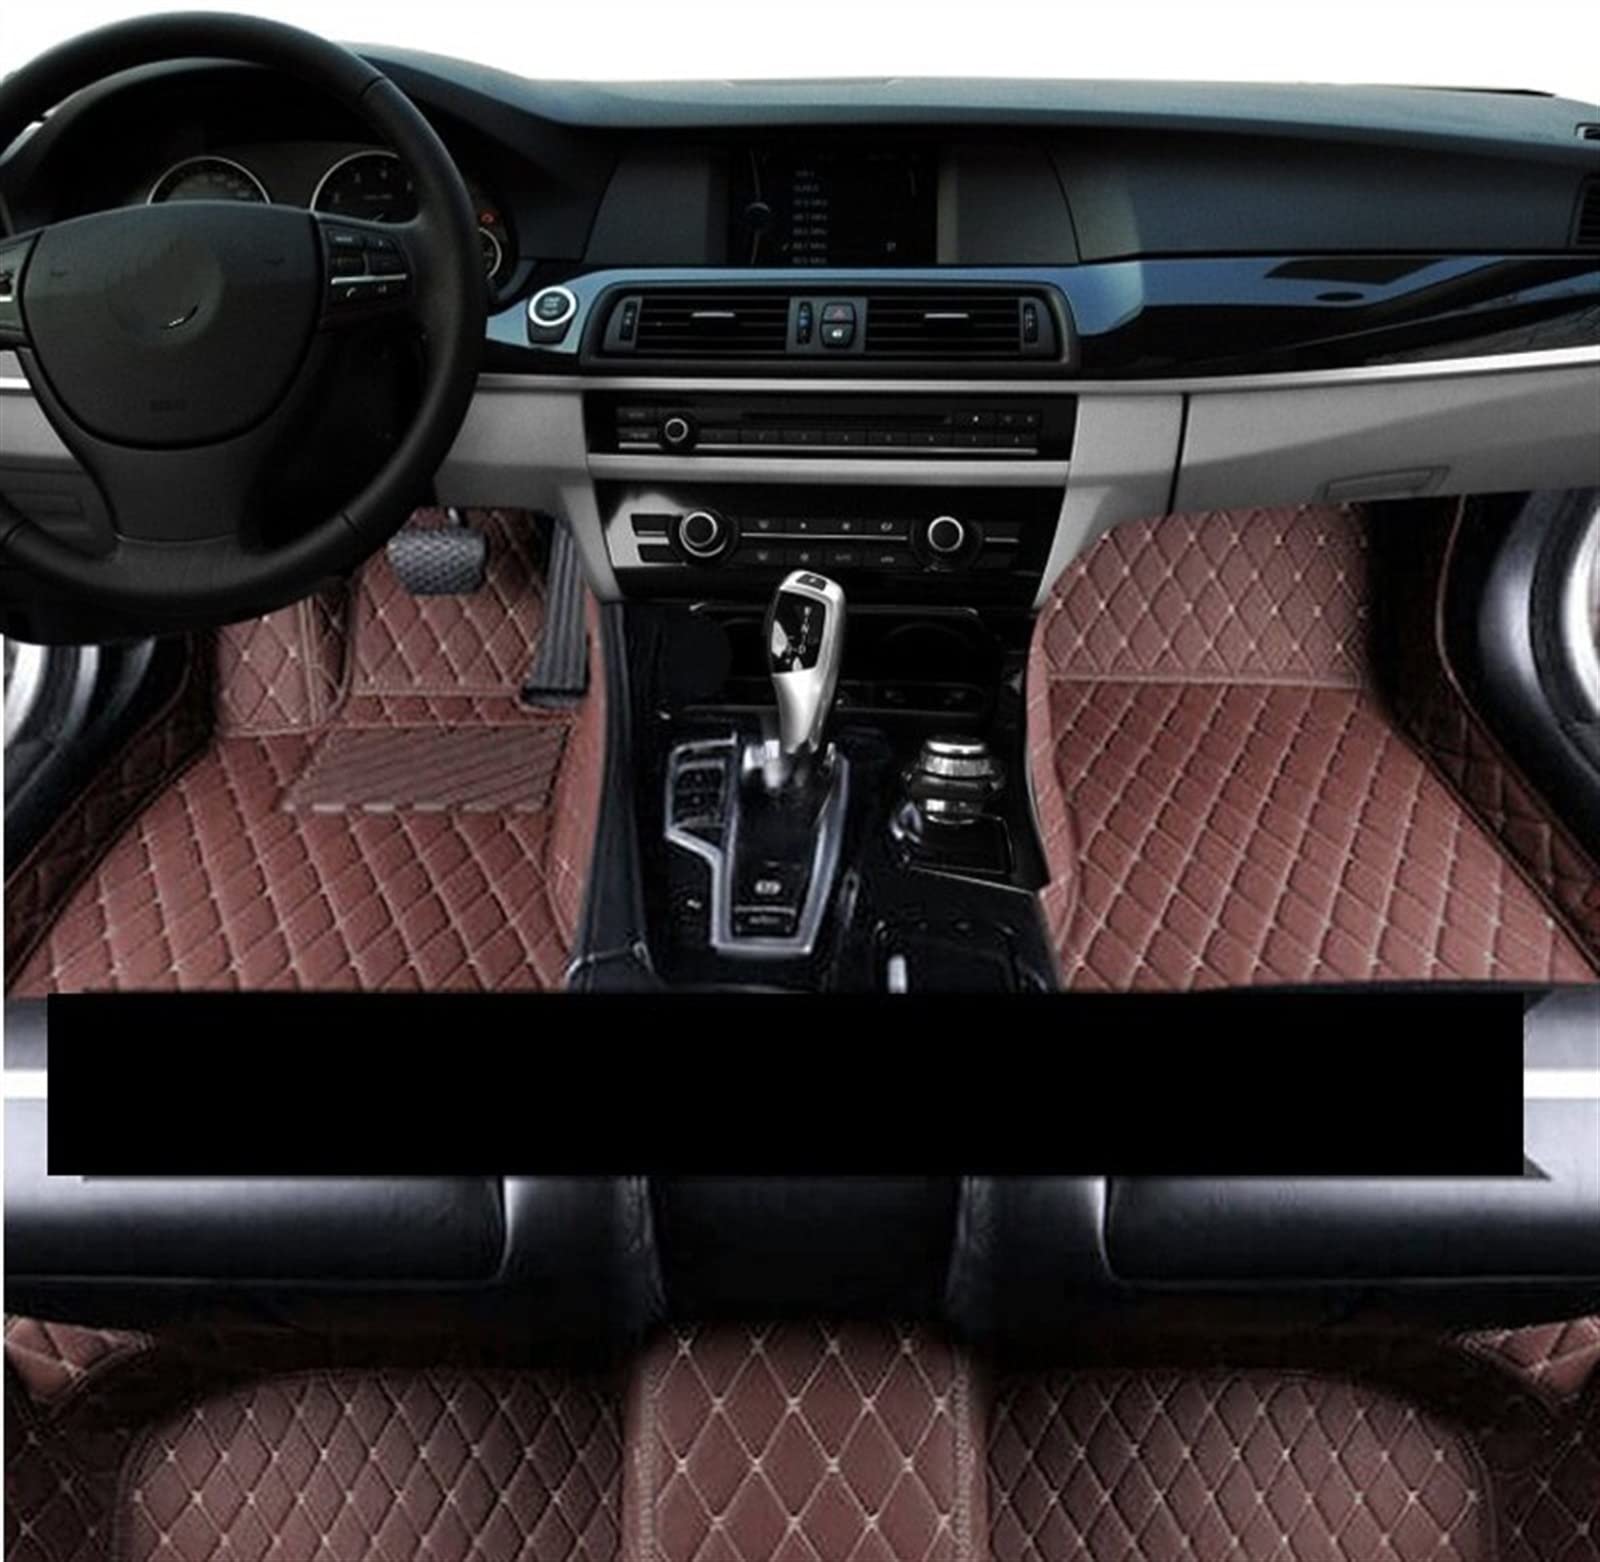 Auto Fußmatten Für Chrysler Für Town & Country 7 Seat 2013 2014 2015 2016 Automatten Lederfußmatte Antirutschmatten Auto (Farbe : Dunkelbraun) von XBOXUN